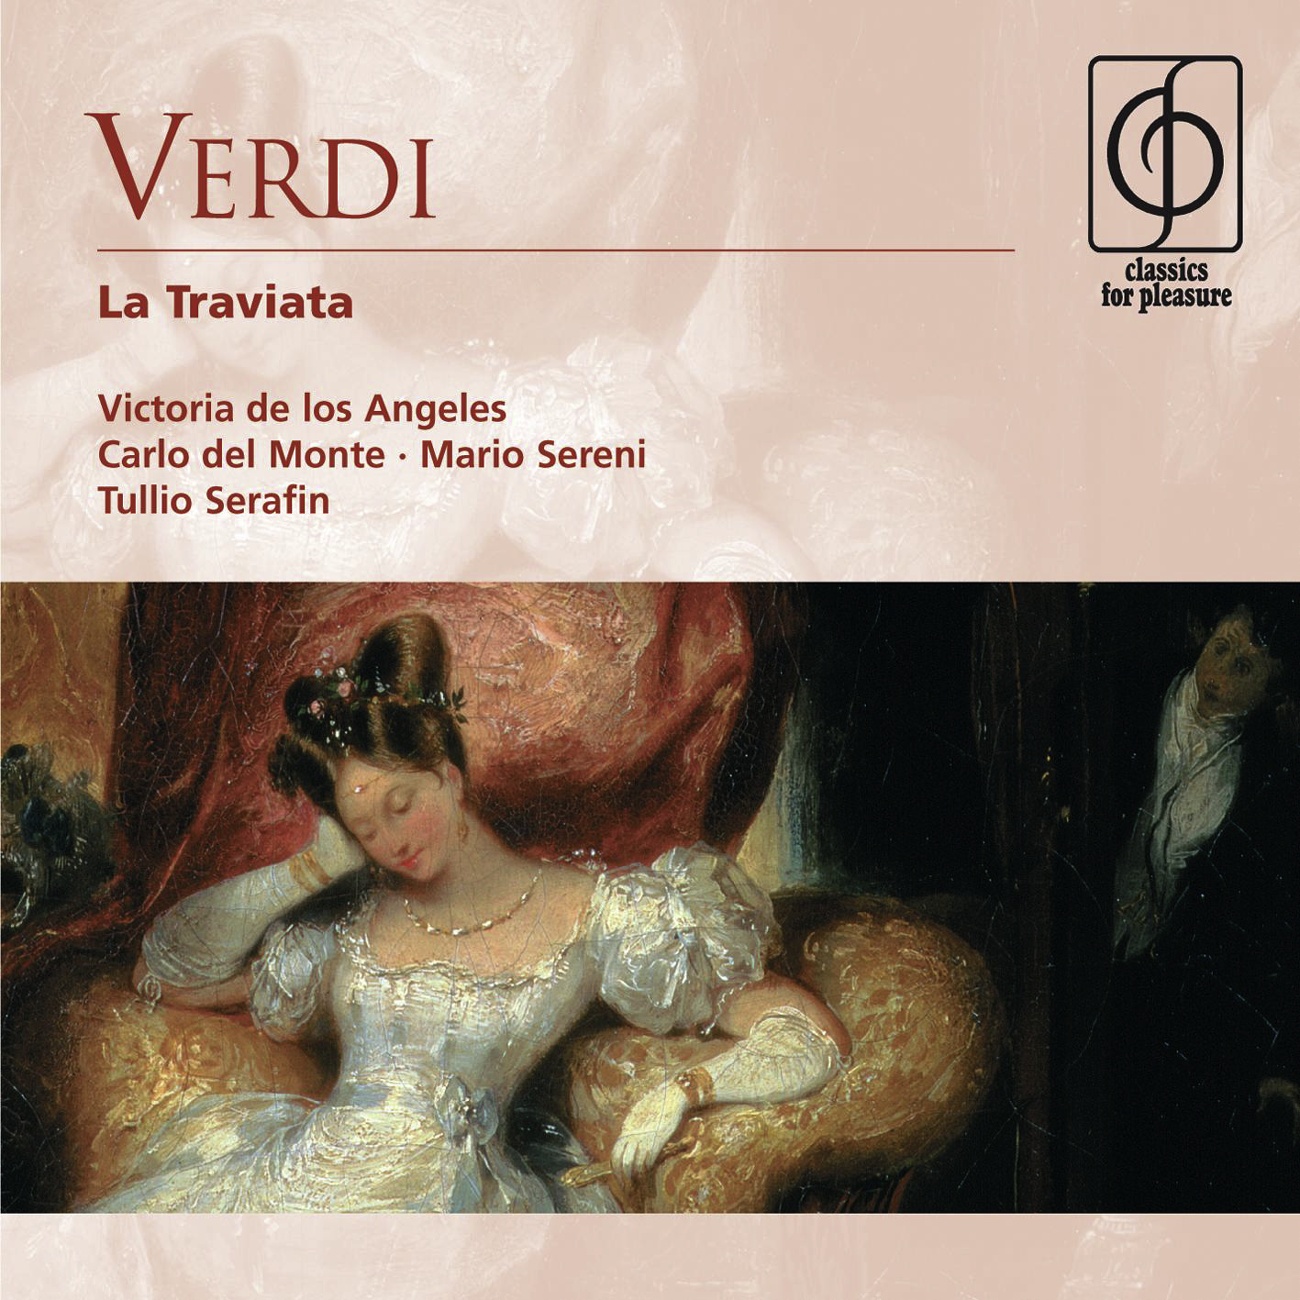 La Traviata ['appendix' with missing tracks from Serafin 1992 drm] (1992 Digital Remaster): Un di, quando le veneri (Germont, Violetta)